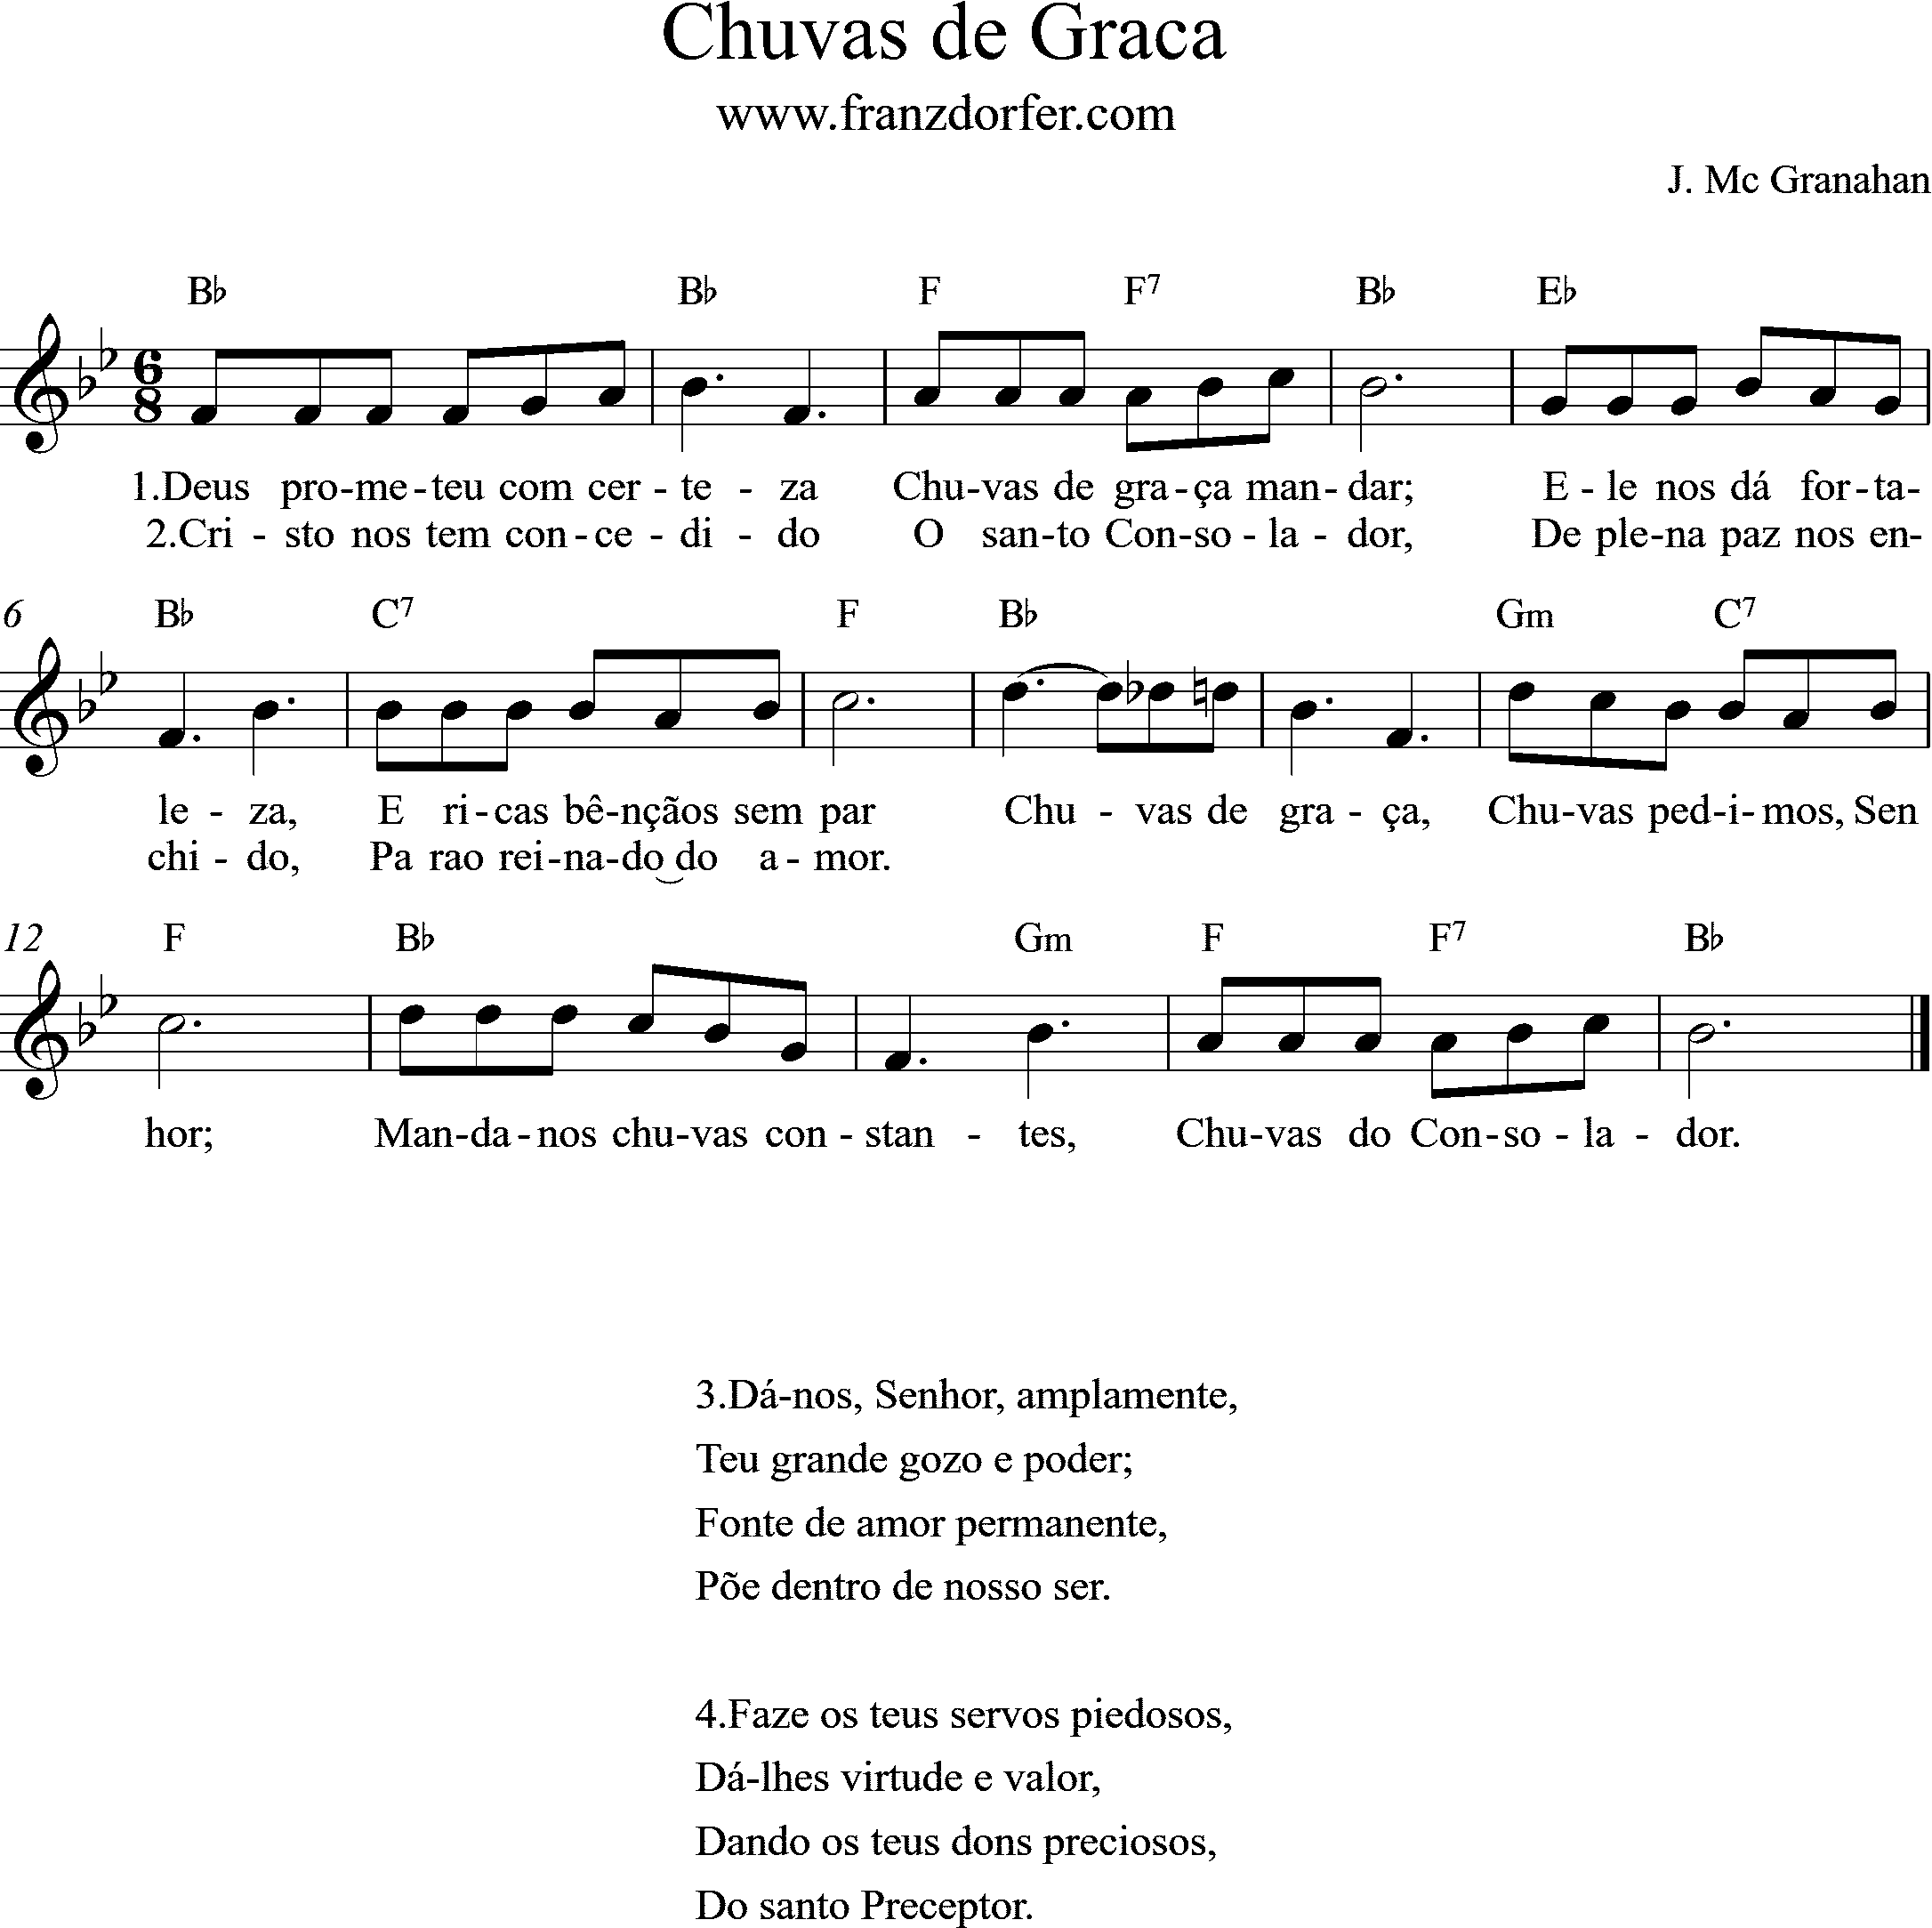 sheetmusic - Chuva de Graca